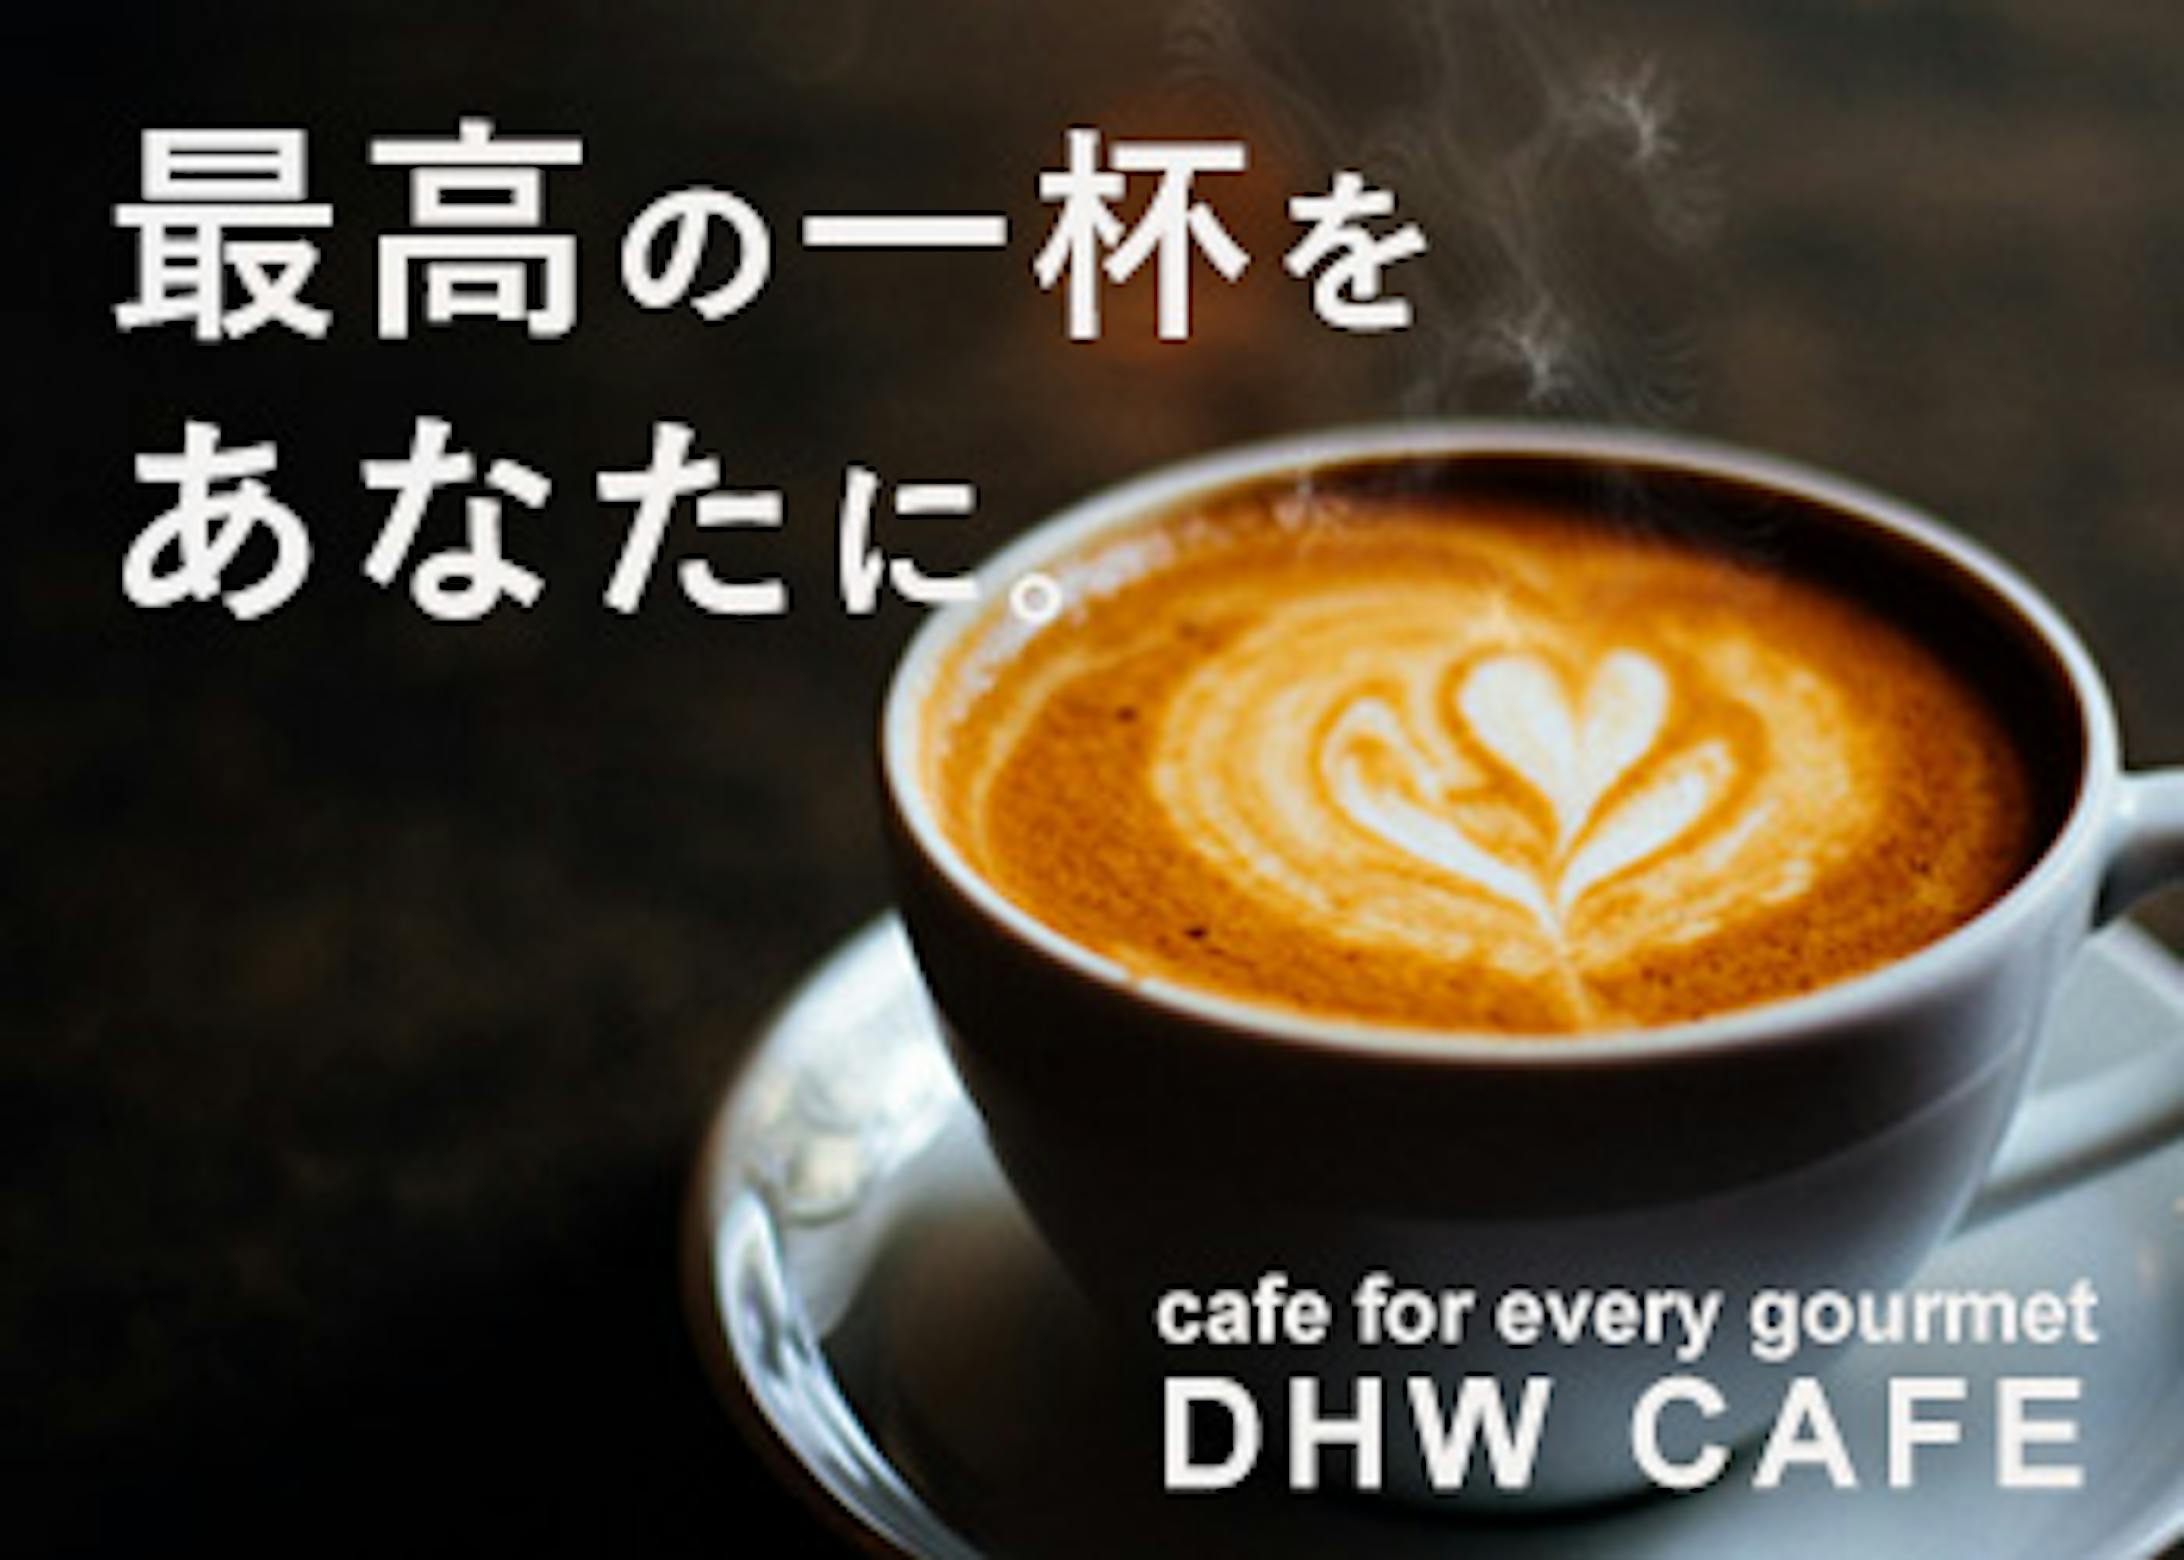 cafe banner-3